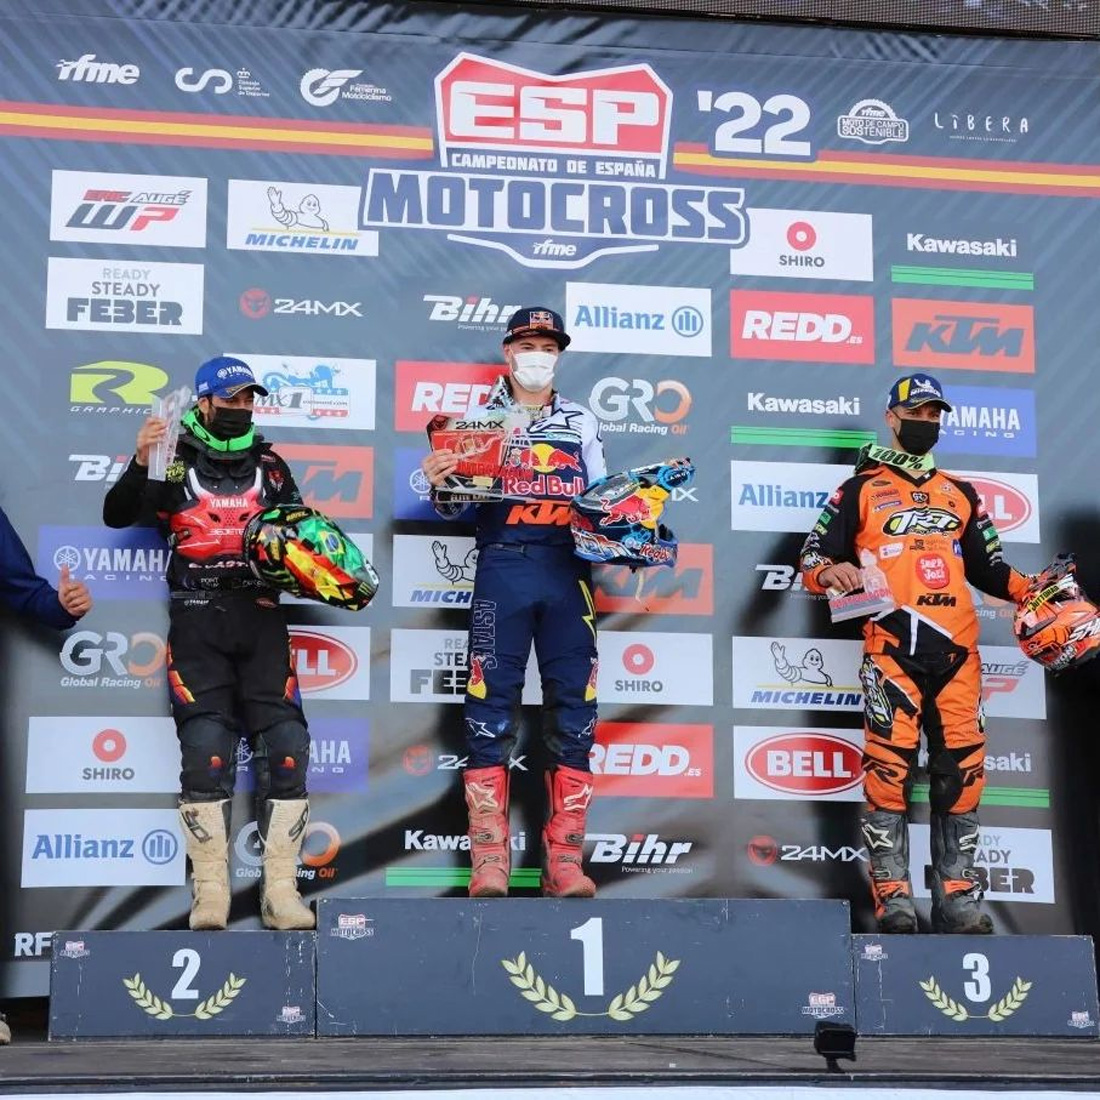 Pódio Espanha Motocross 2022